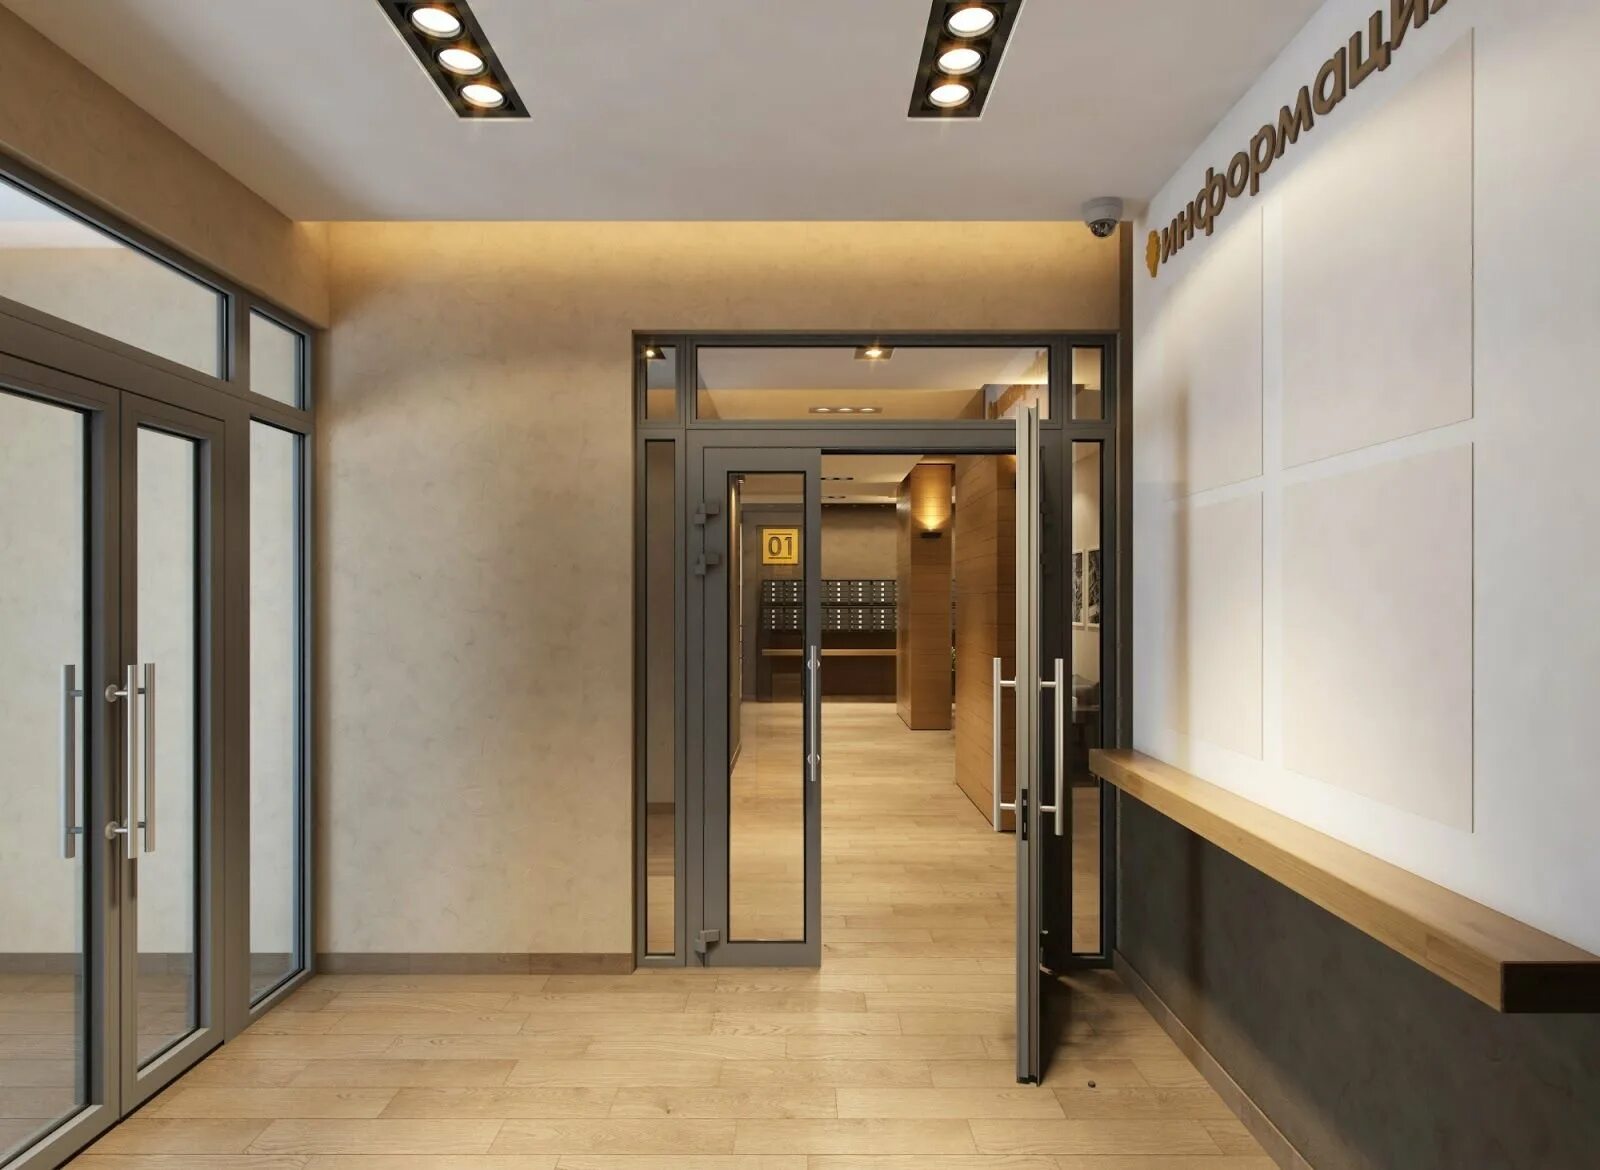 Двери в лифтовой холл. Холл коридор КРОСТ. Лифтовой Холл 1 этажа. ЖК халькон. Интерьер входной группы.